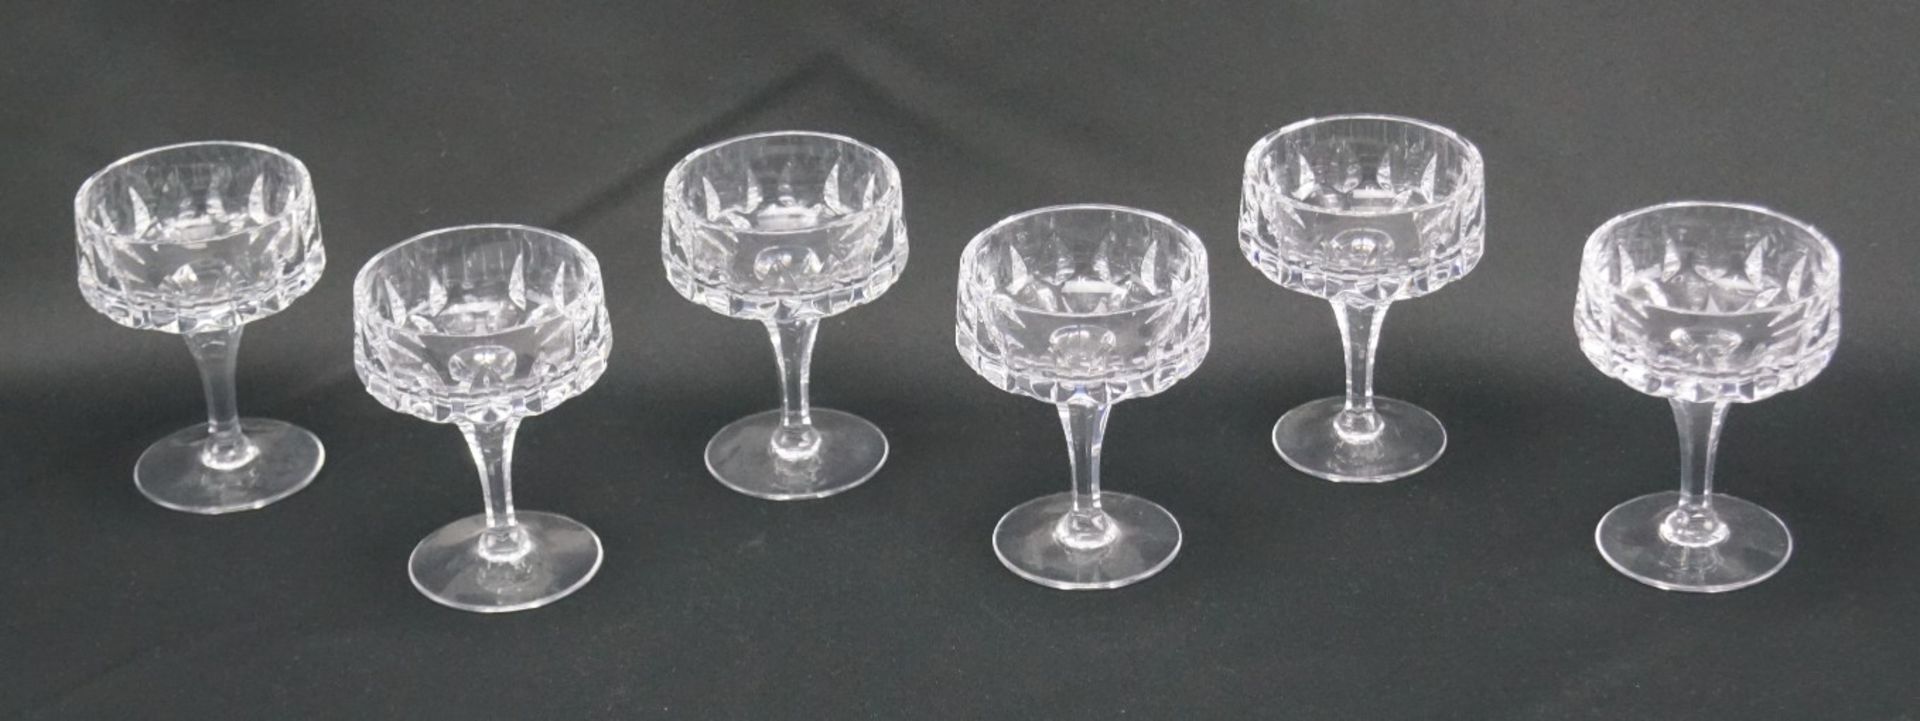 Sechs Kelchgläser aus KristallglasKristallglas, Höhe der Gefäße 9,5 cm und Durchmesser 7 cm, in